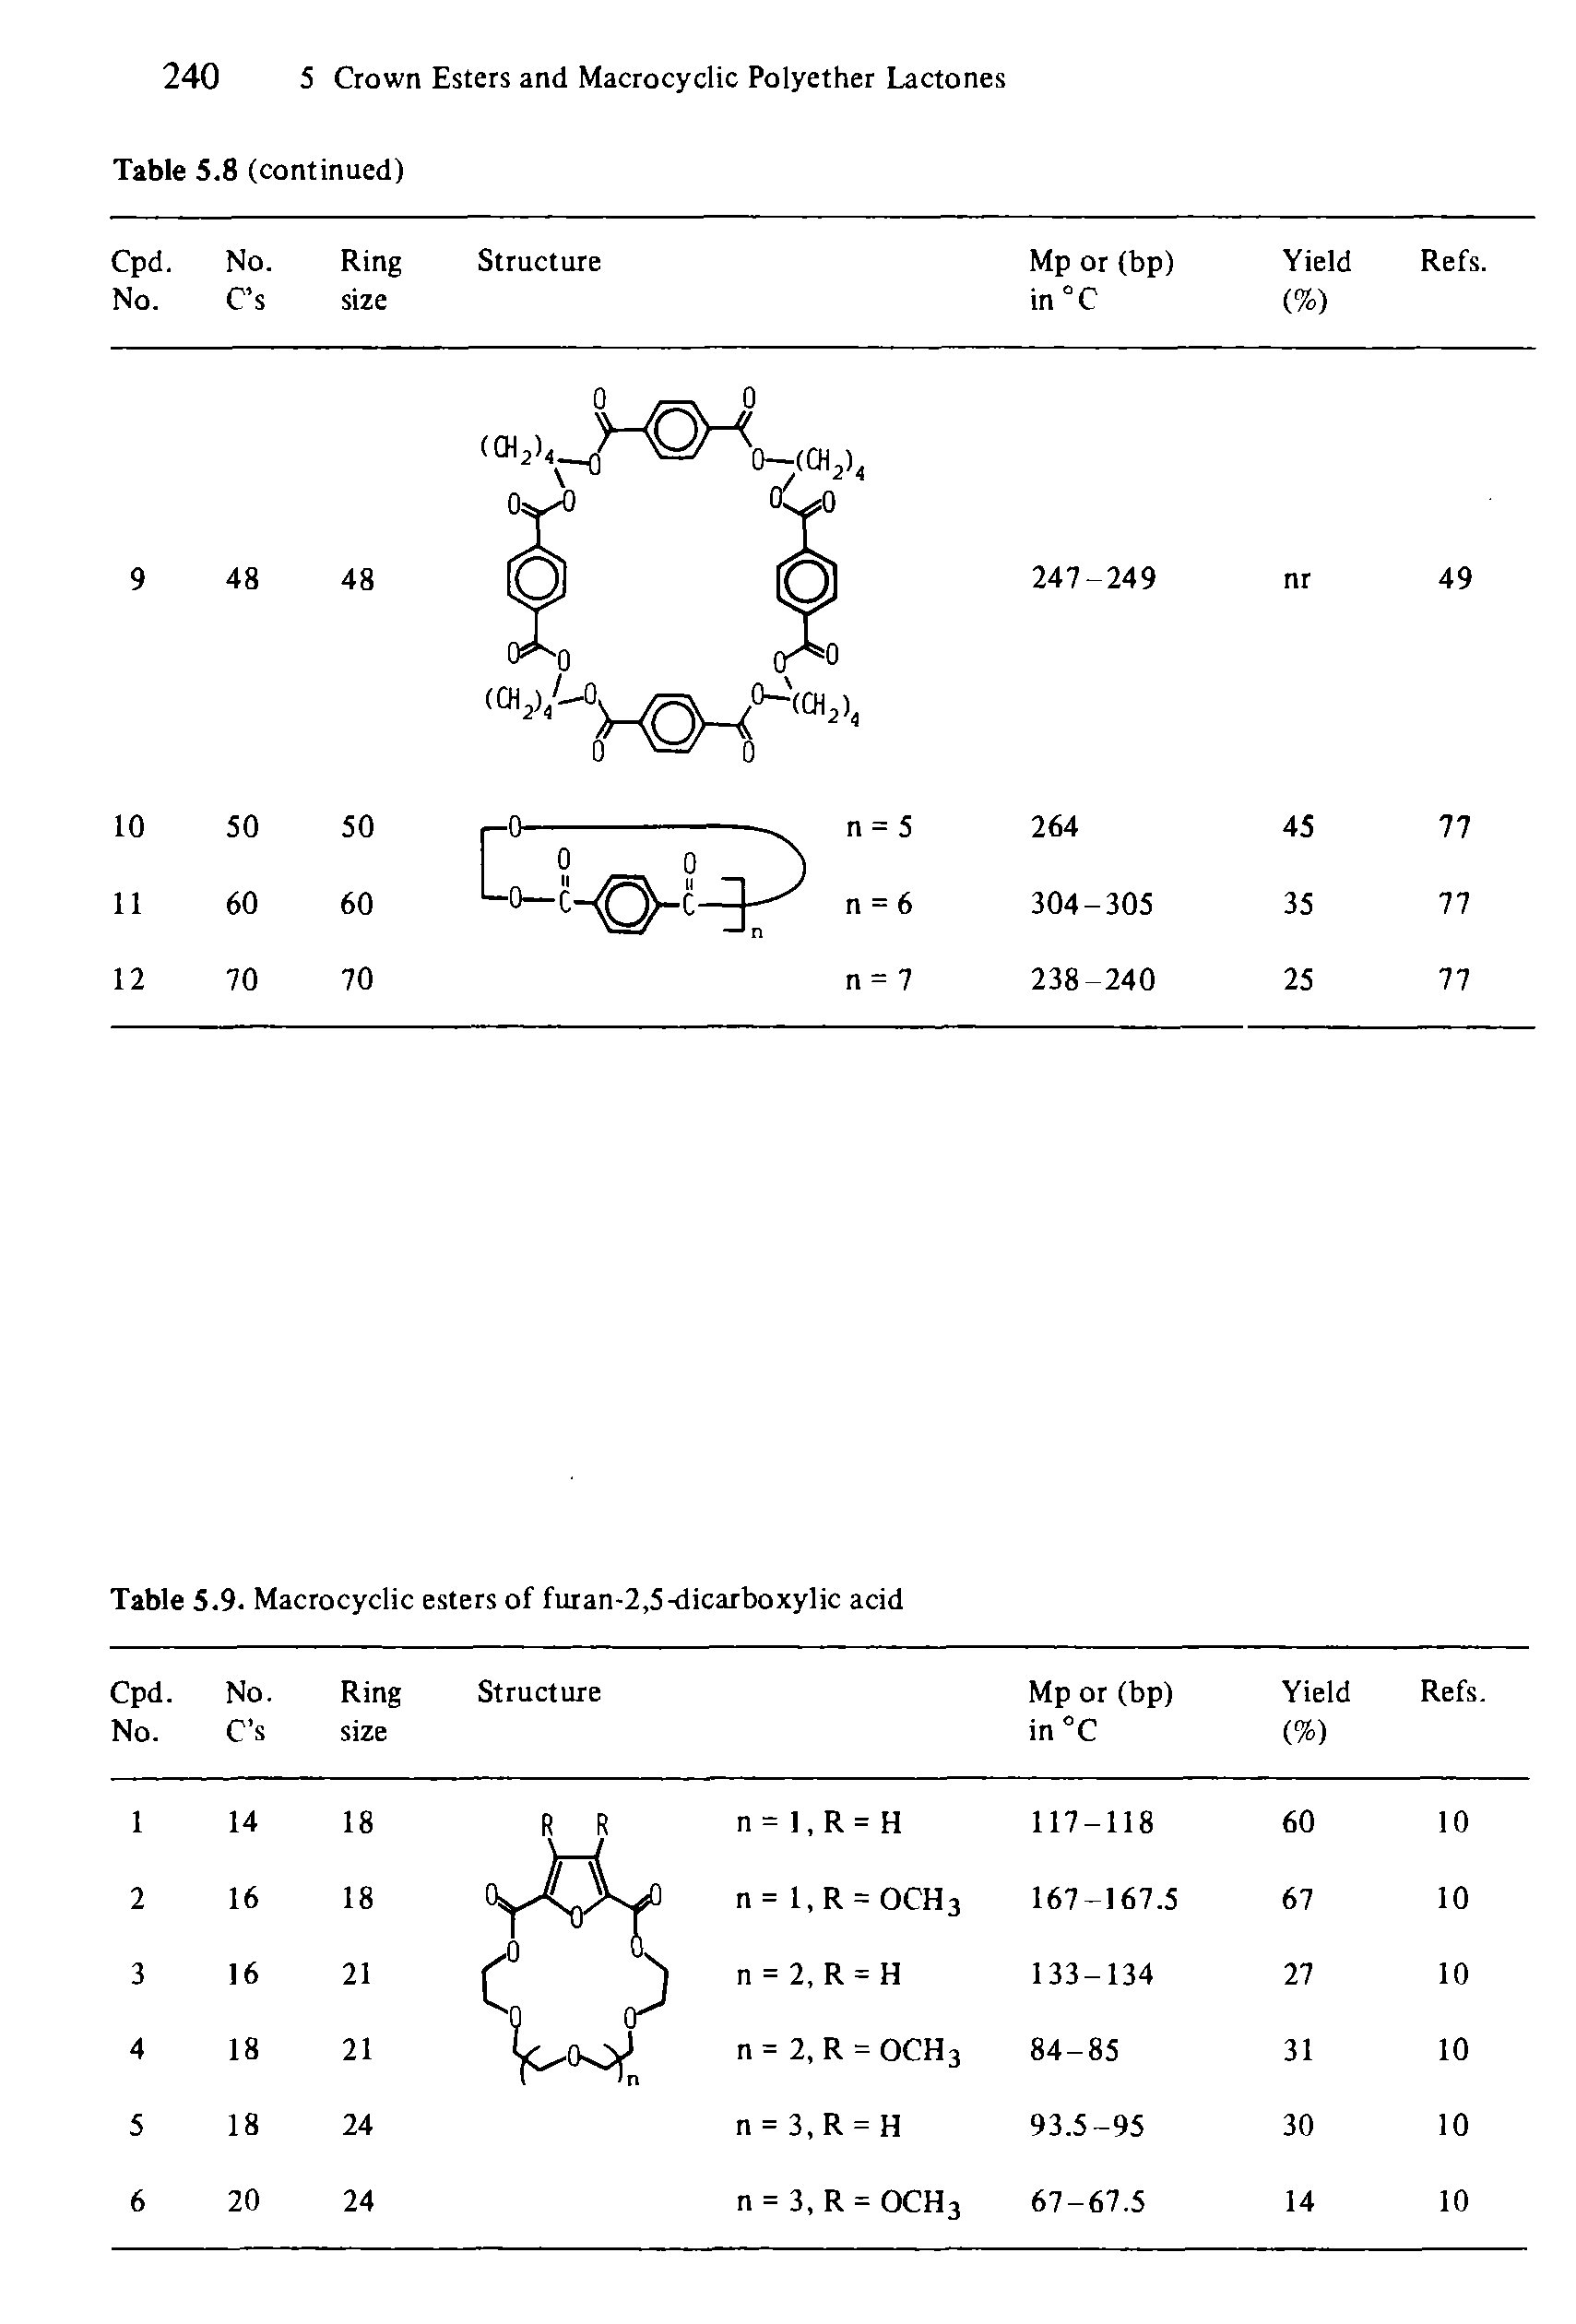 Table 5.9. Macrocyclic esters of furan-2,5-dicarboxylic acid...